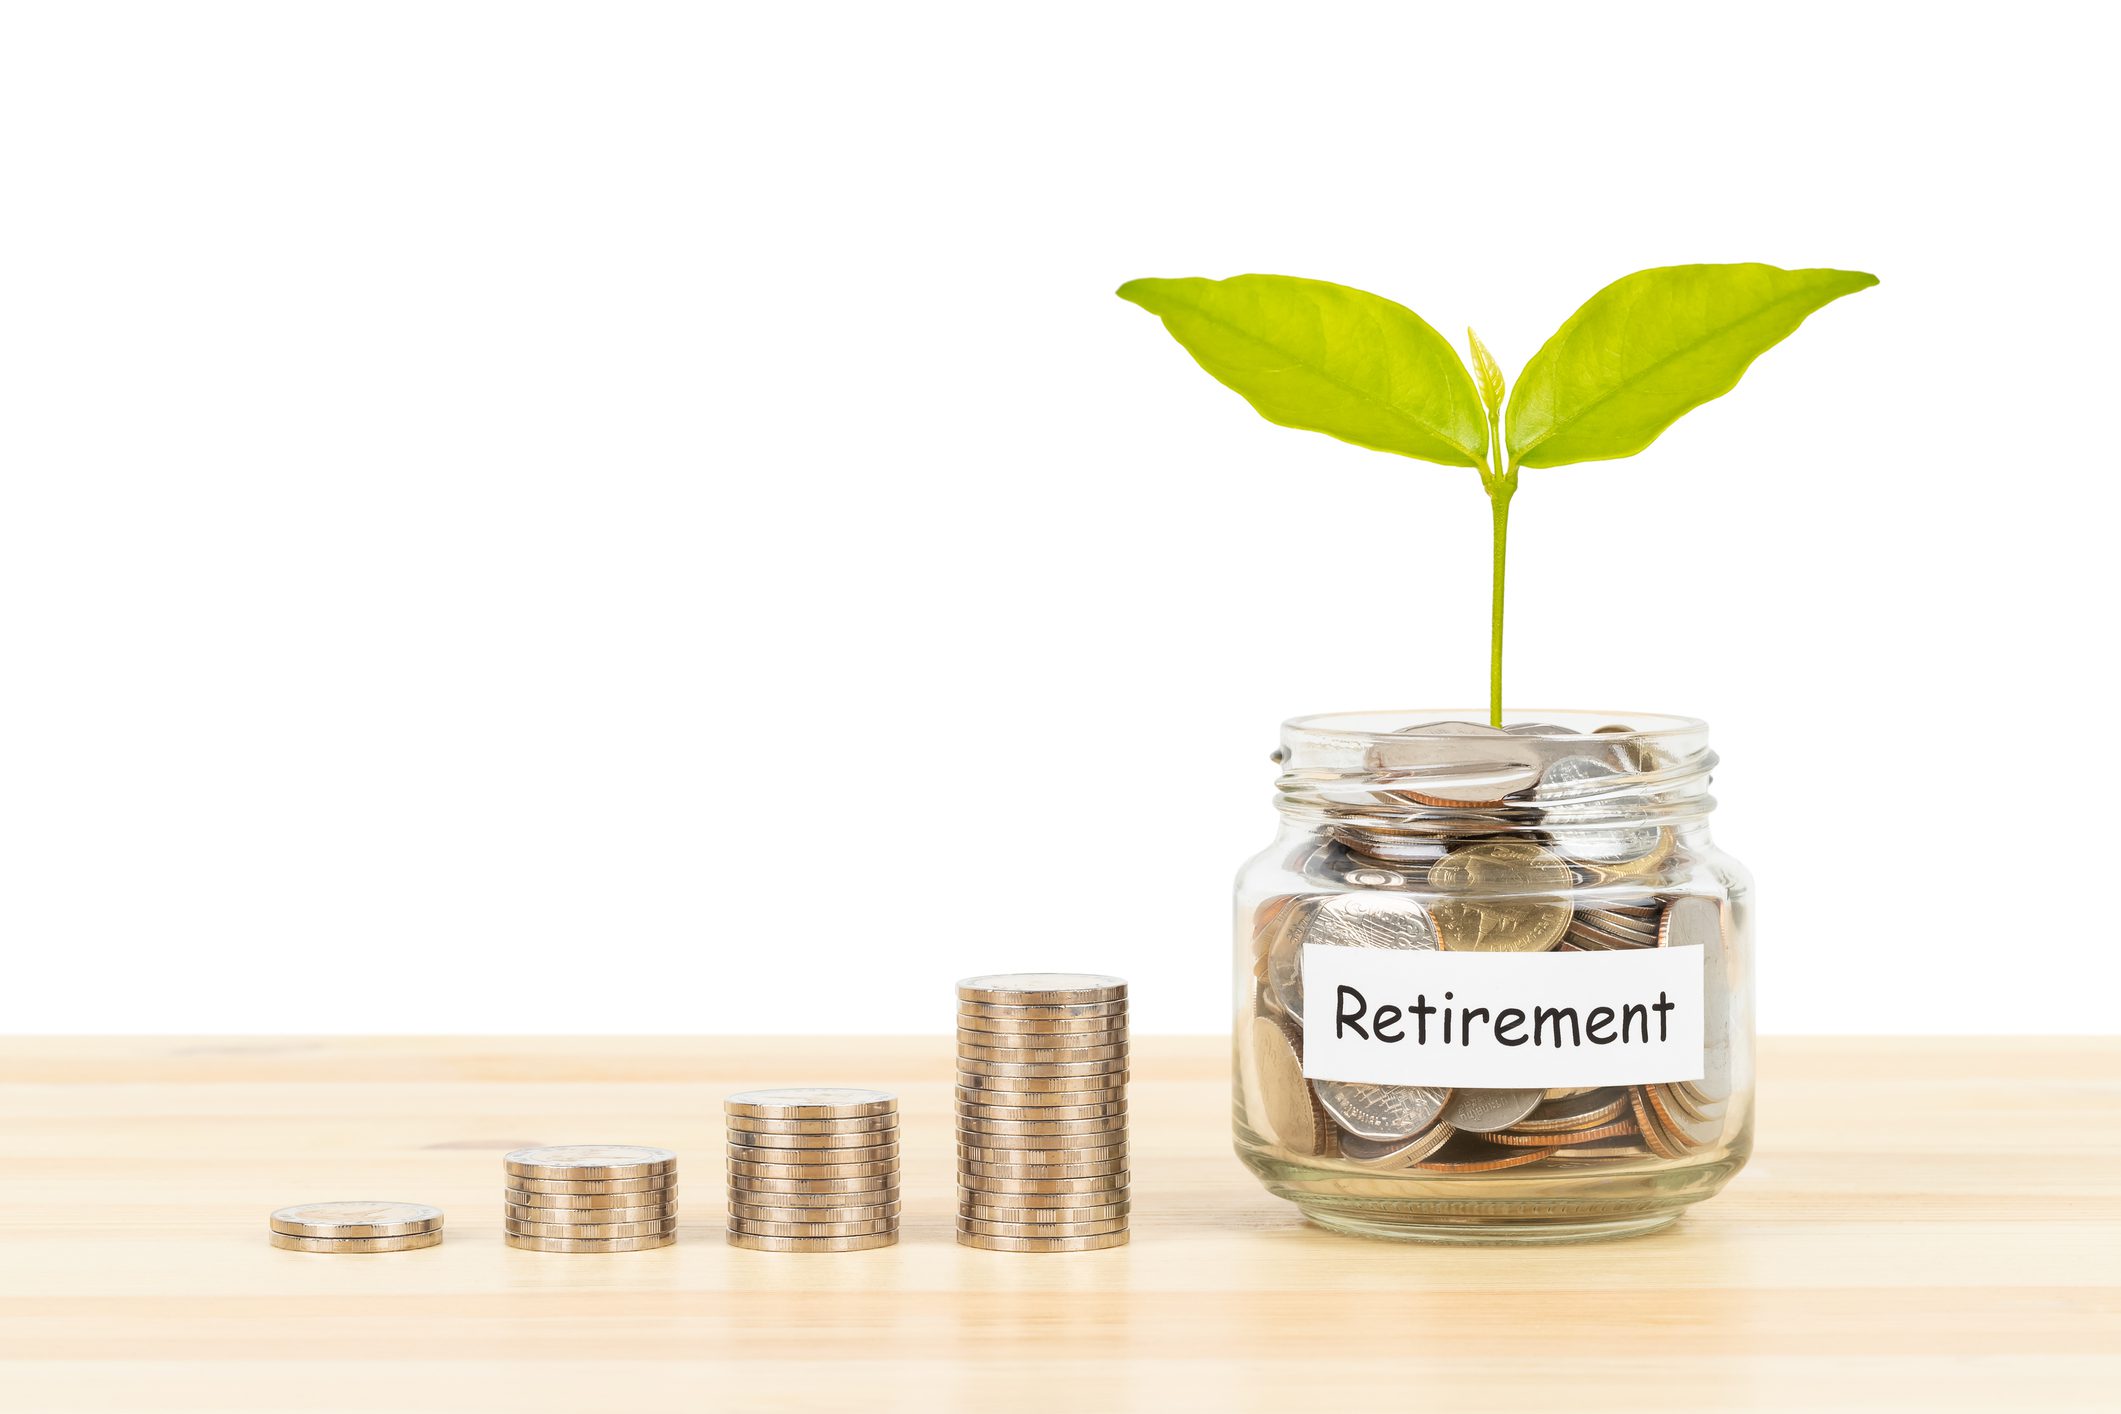 Census Bureau survey finds many adults unprepared for retirement